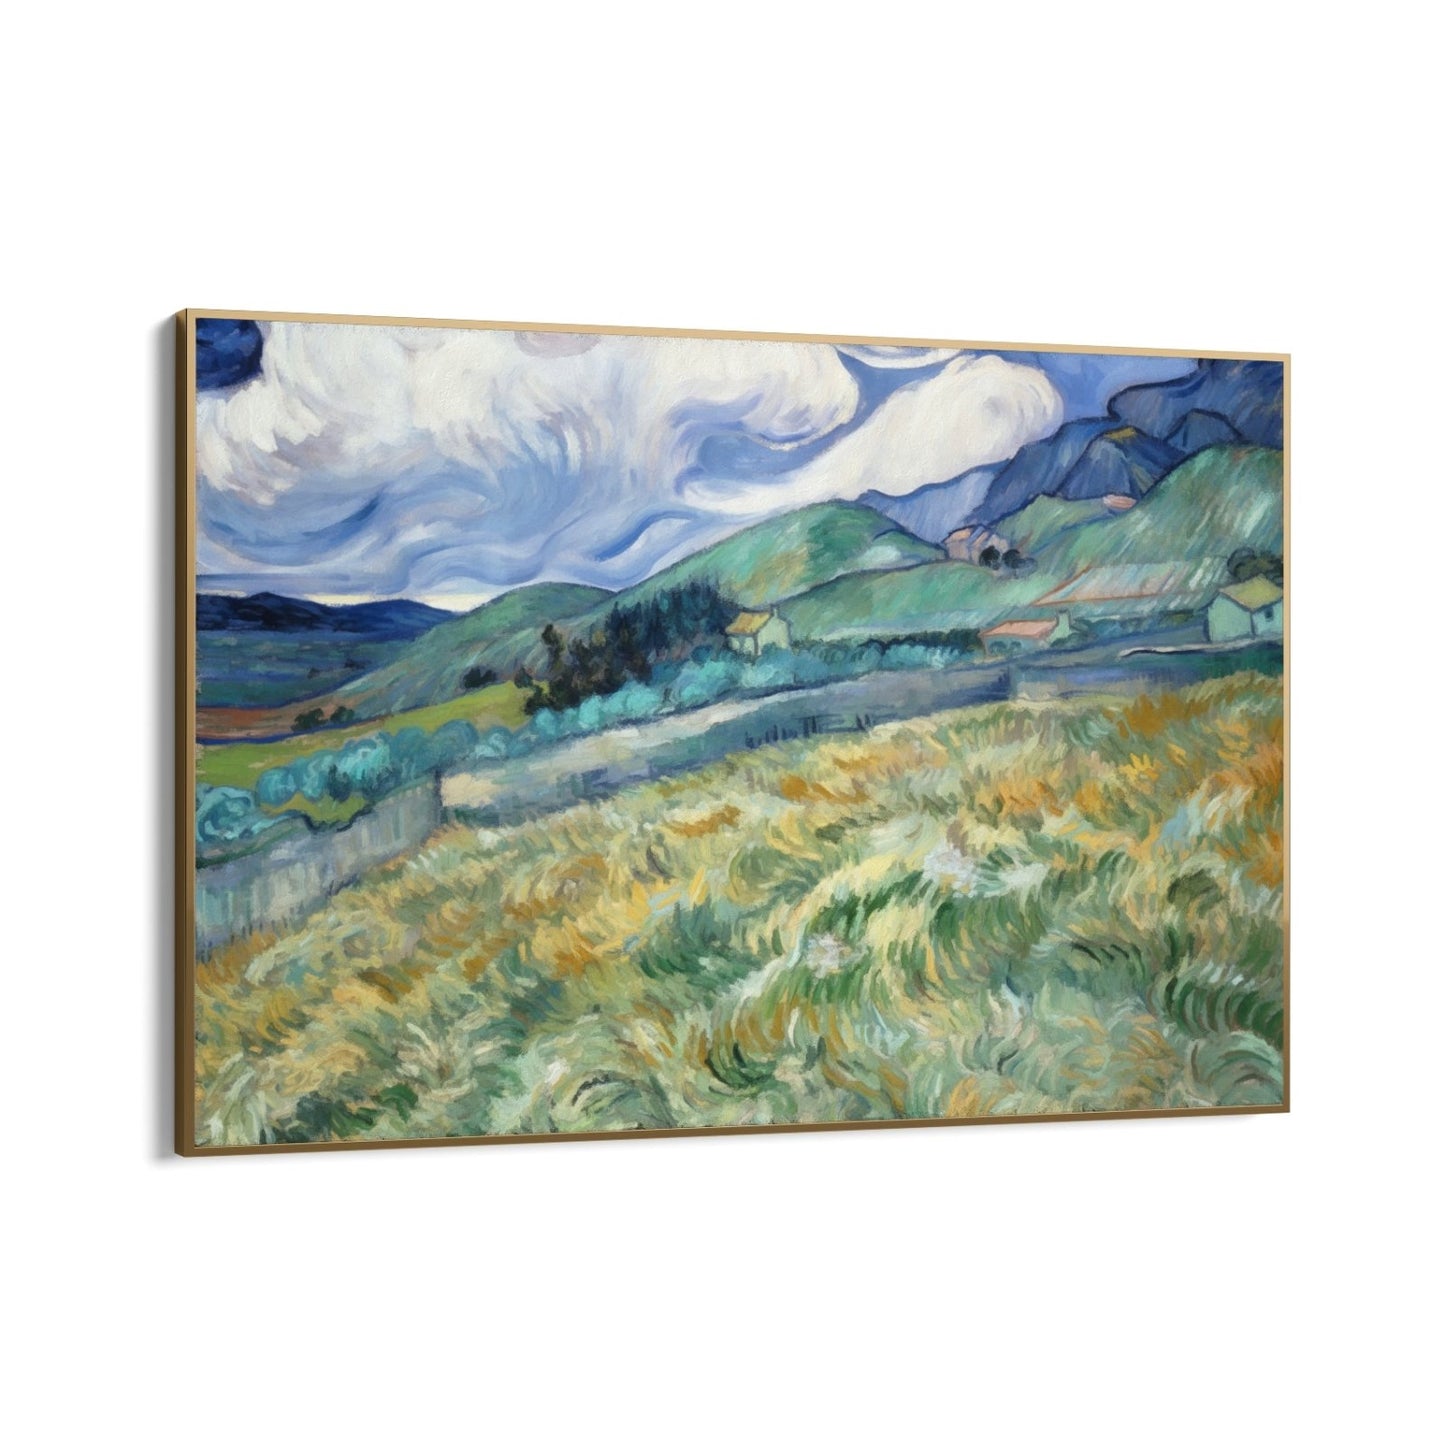 Champ de blé et montagnes 1889, Vincent Van Gogh